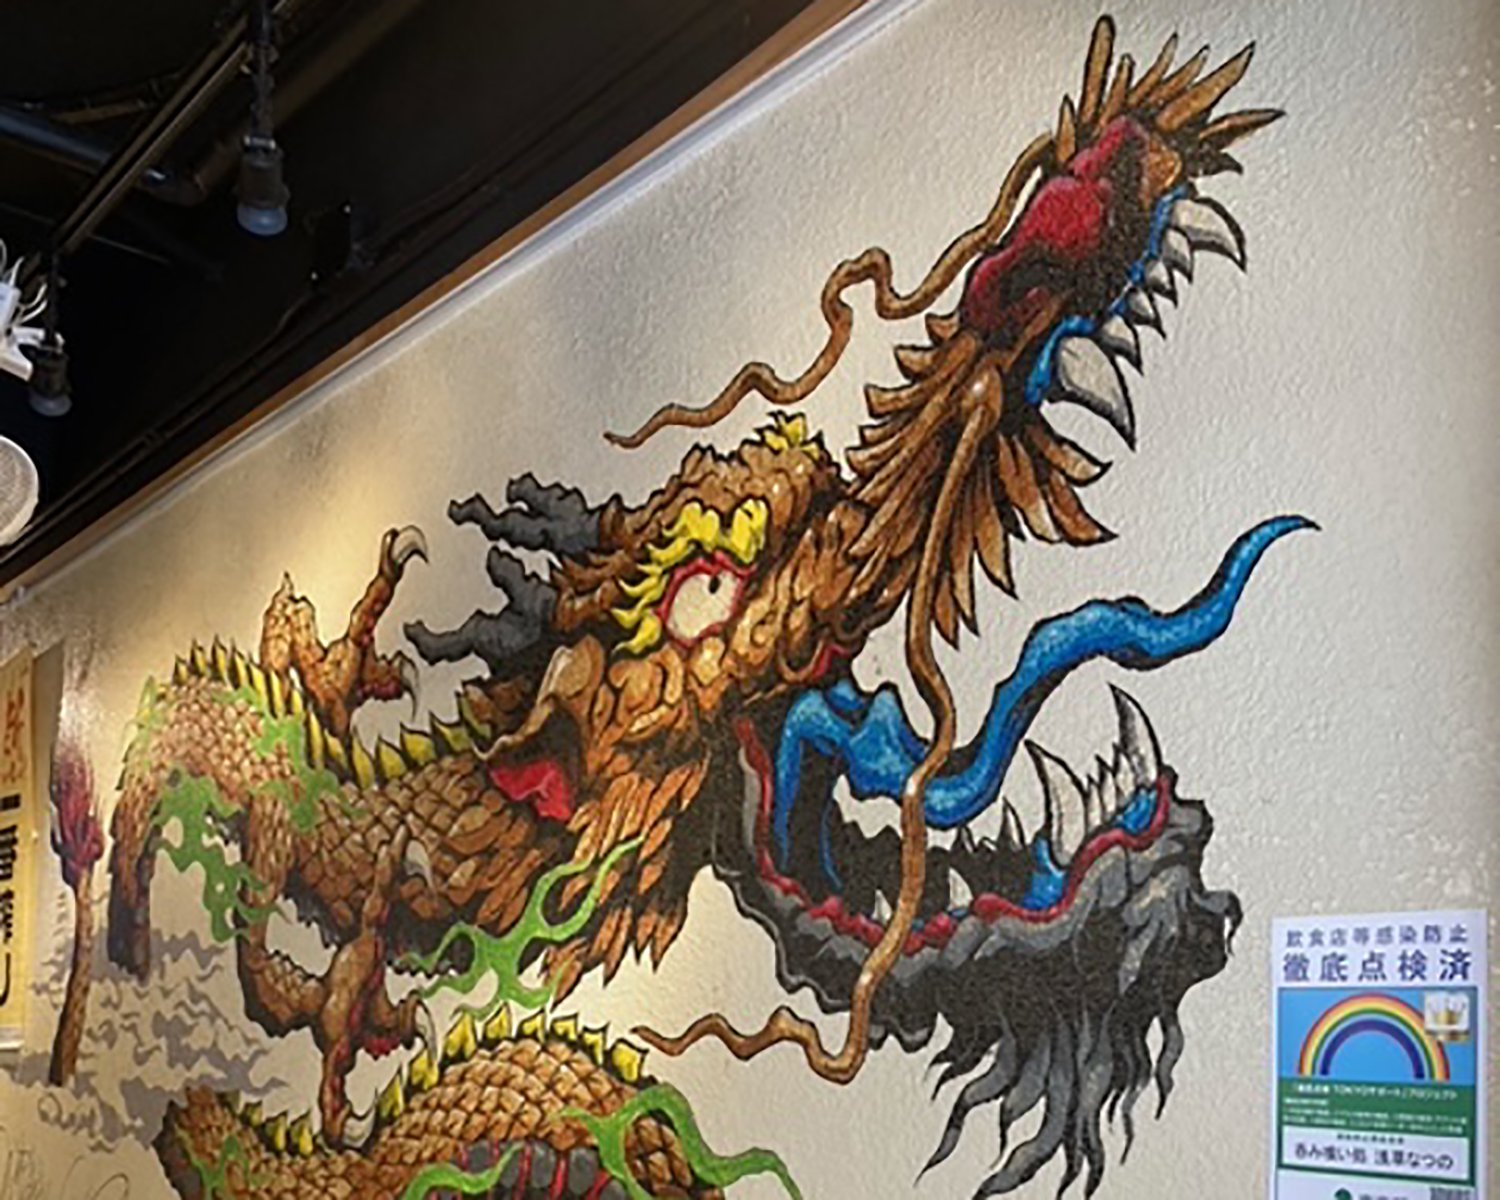 お店の壁にデカデカと描かれた龍のイラストはおみやげ屋さん時代からの名残り。インパクト抜群で写真を撮っていく人も多数いる。